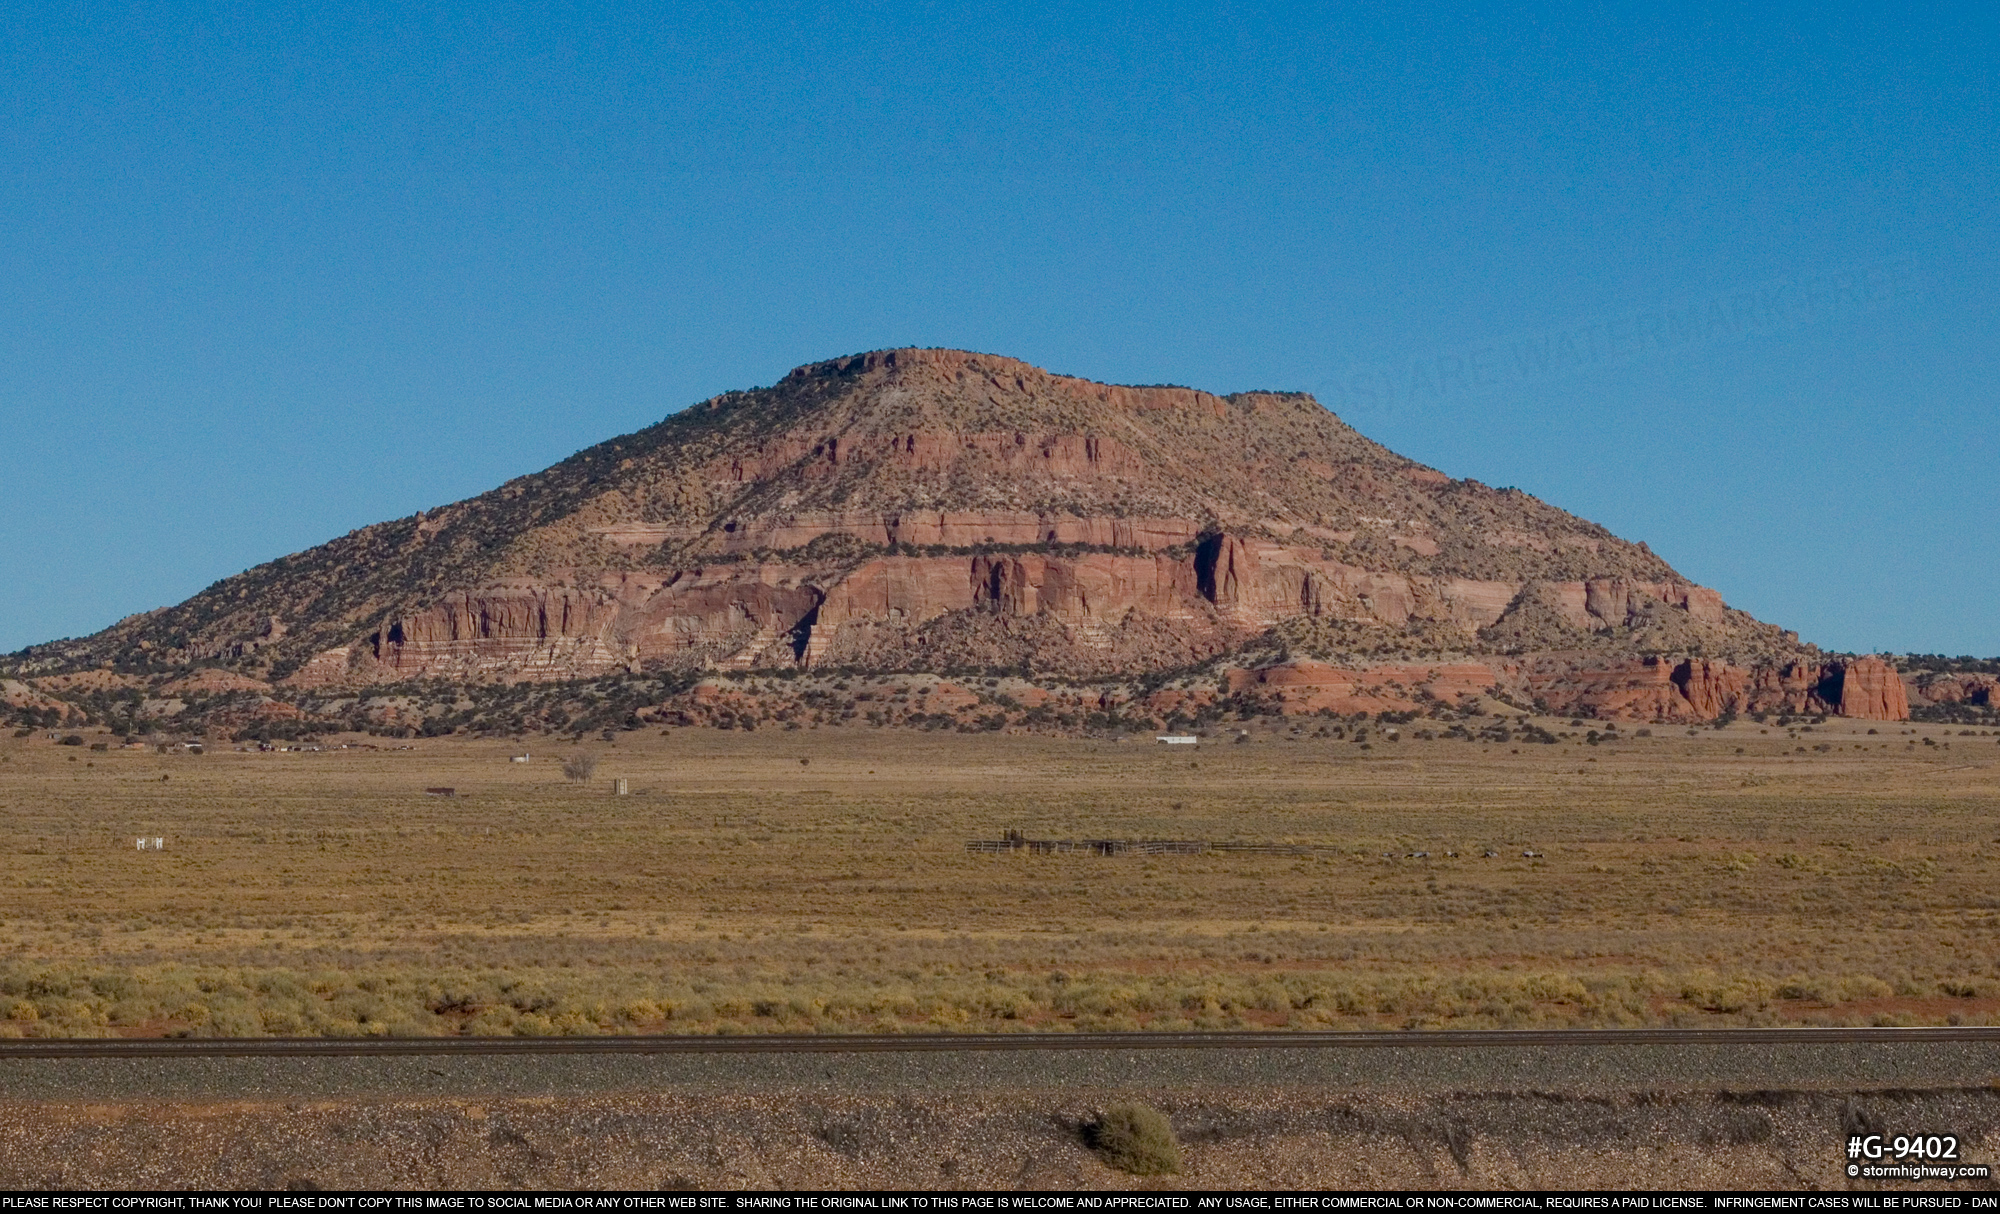 Mesa near Prewitt, New Mexico